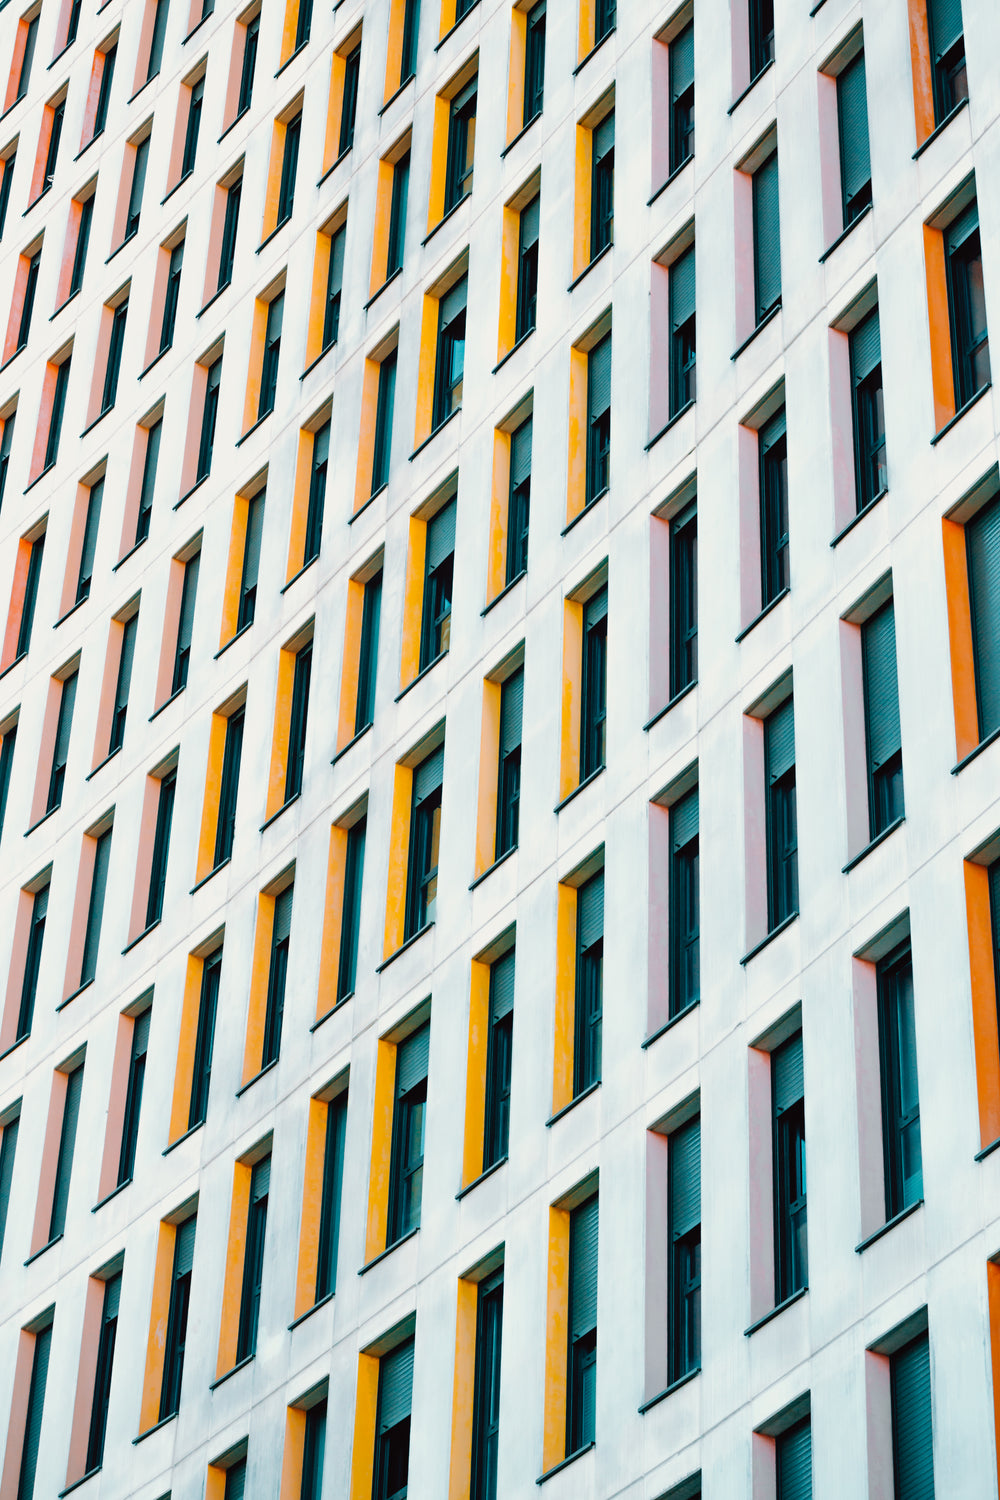 padrão de janelas artísticas coloridas de um prédio